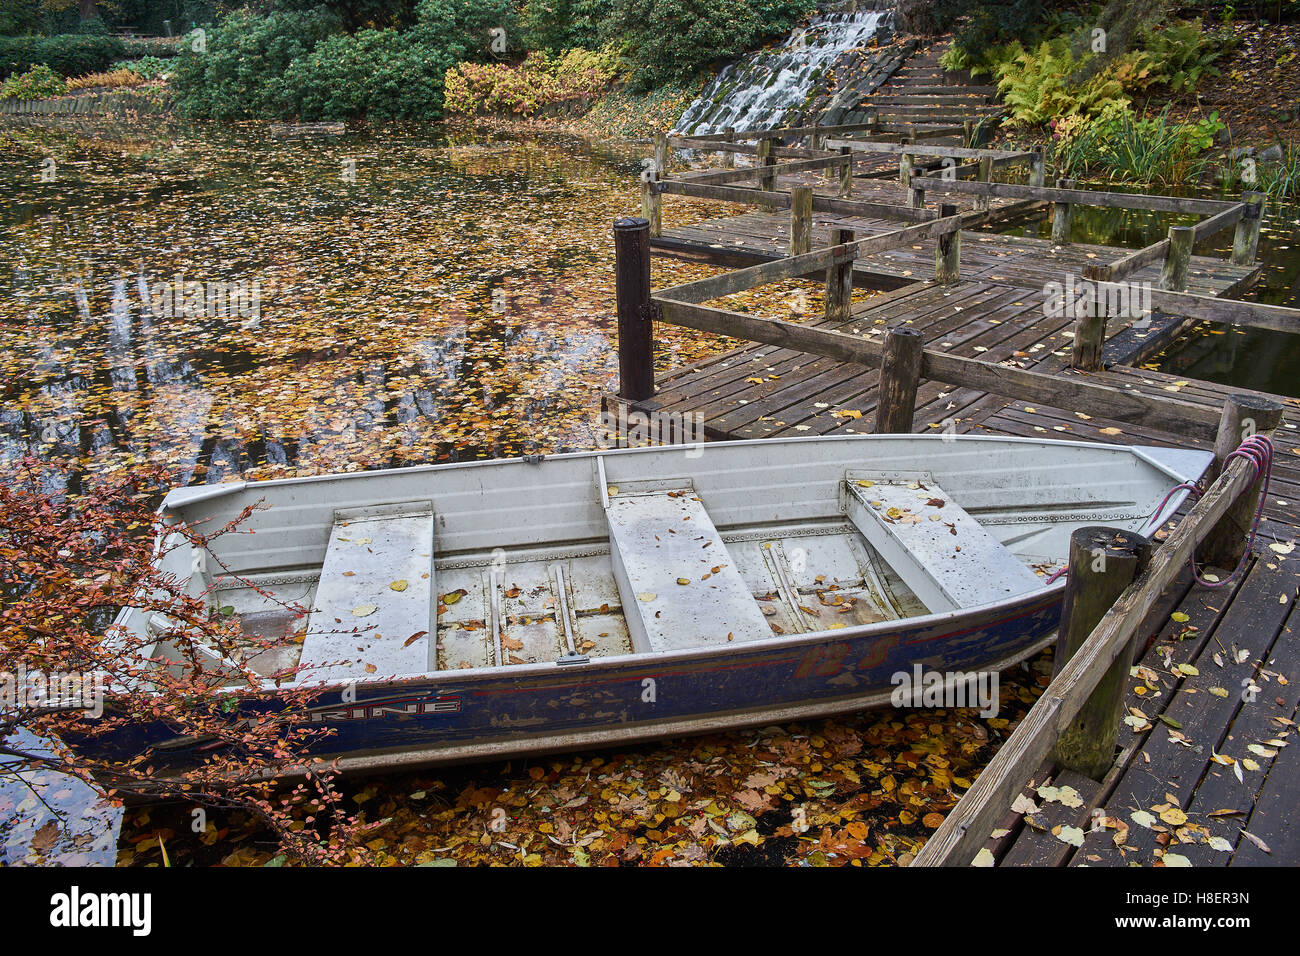 Le silence de l'automne les feuilles tombées de l'eau calme bateau ancré Banque D'Images